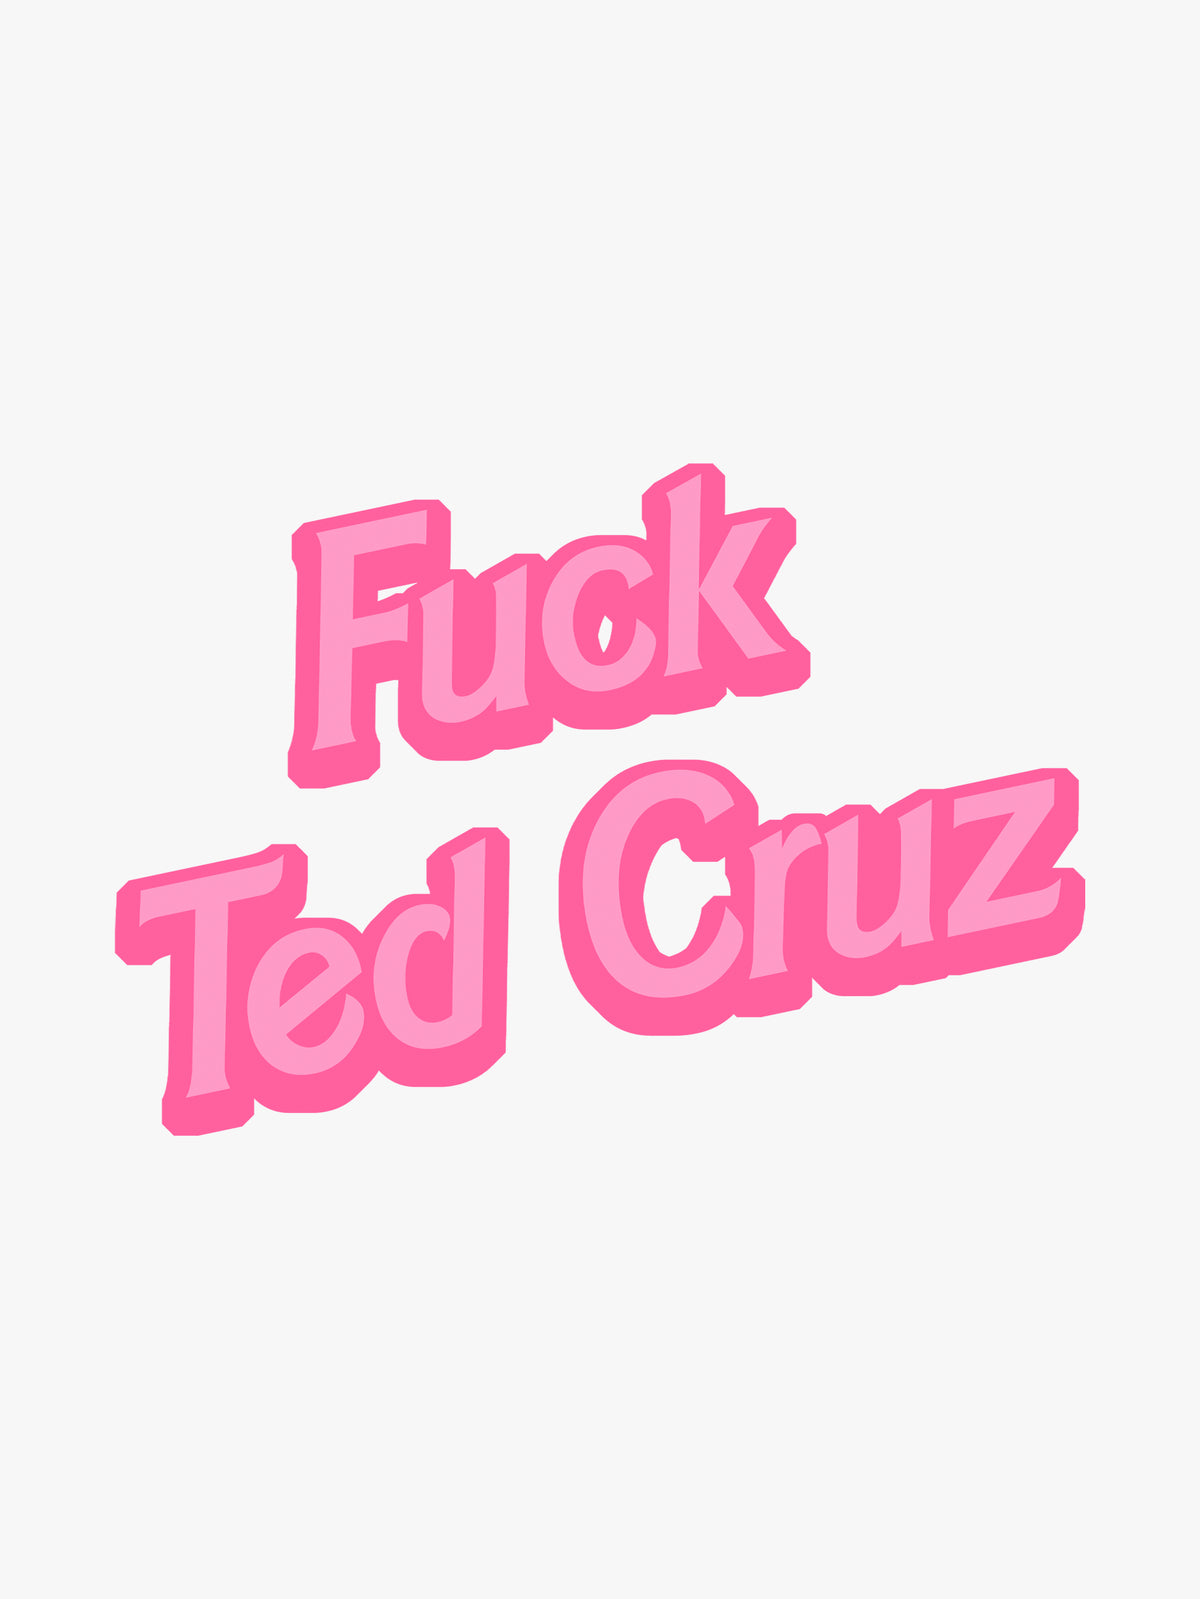 Fuck Ted Cruz by Ponytail Mafia